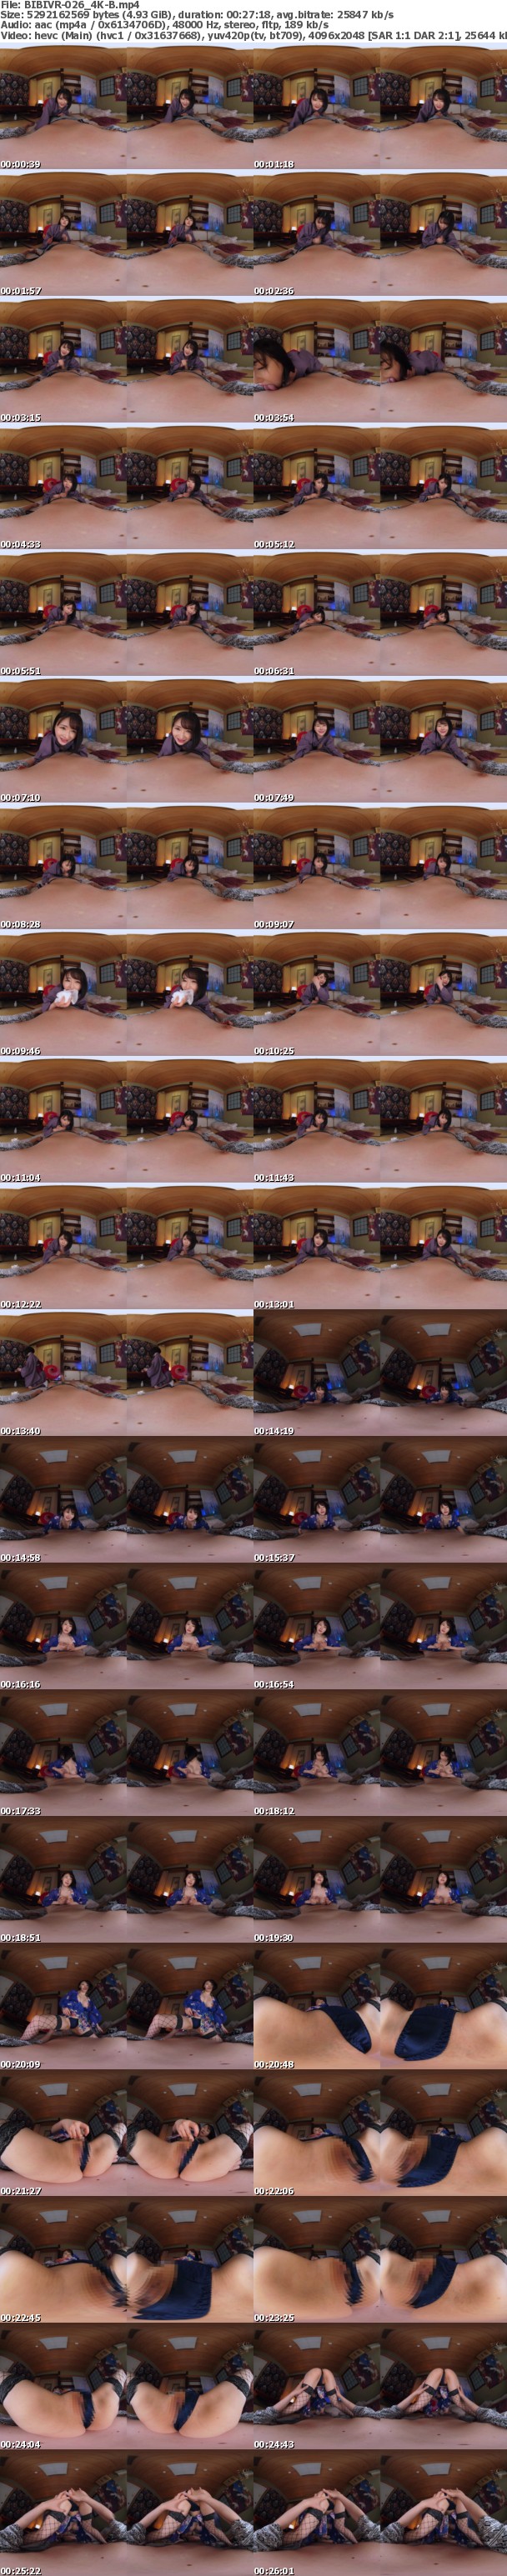 (VR) (4K) BIBIVR-026 巨乳×パイパンで男性客を心底イカせる嫐り旅館 るいさん